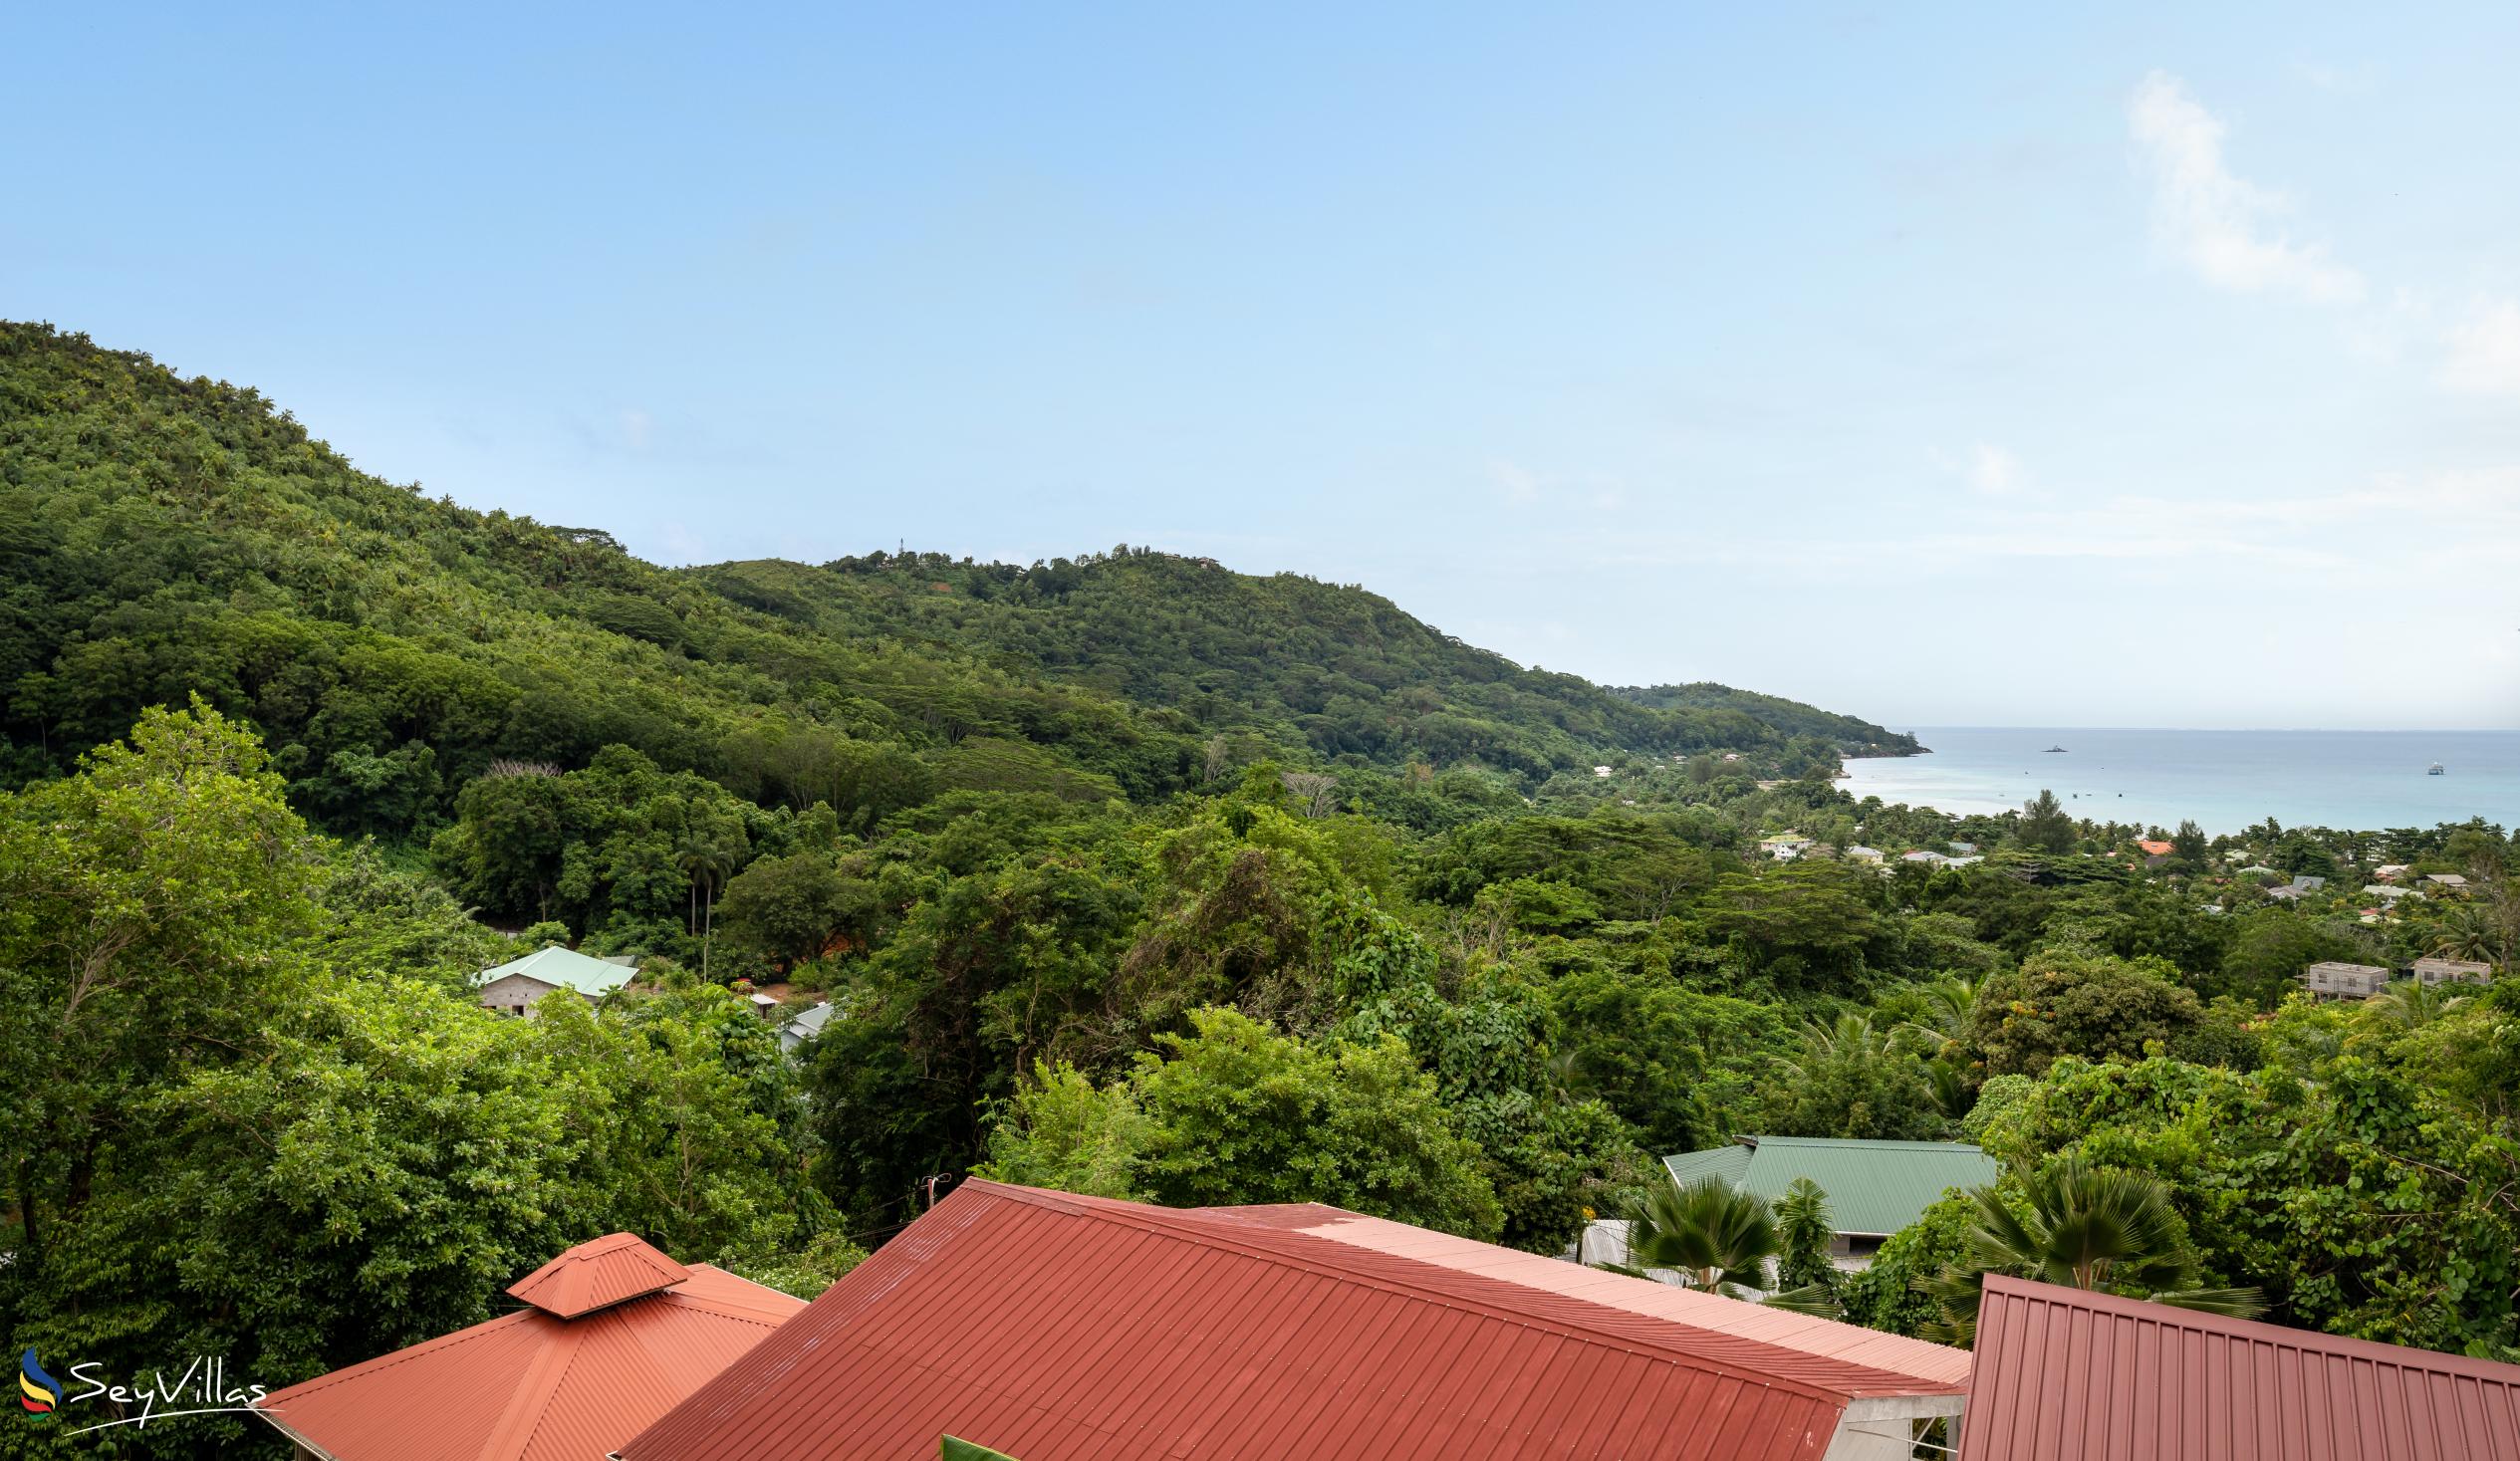 Foto 15: Cella Villa - Posizione - Mahé (Seychelles)